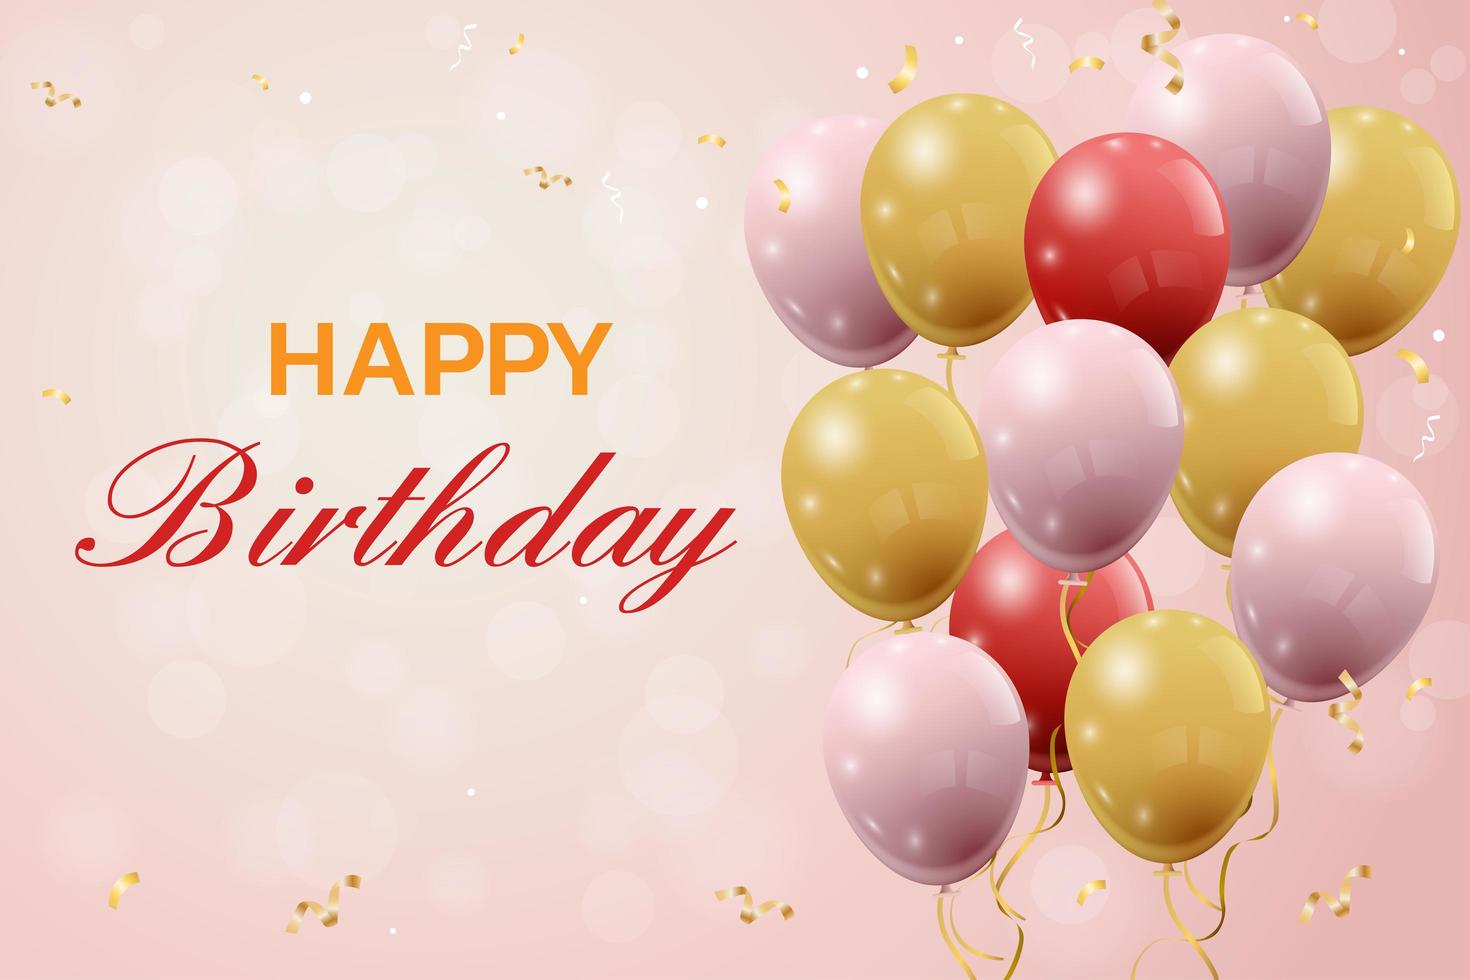 Herzlichen Glückwunsch zum Geburtstag mit Luftballons vektor